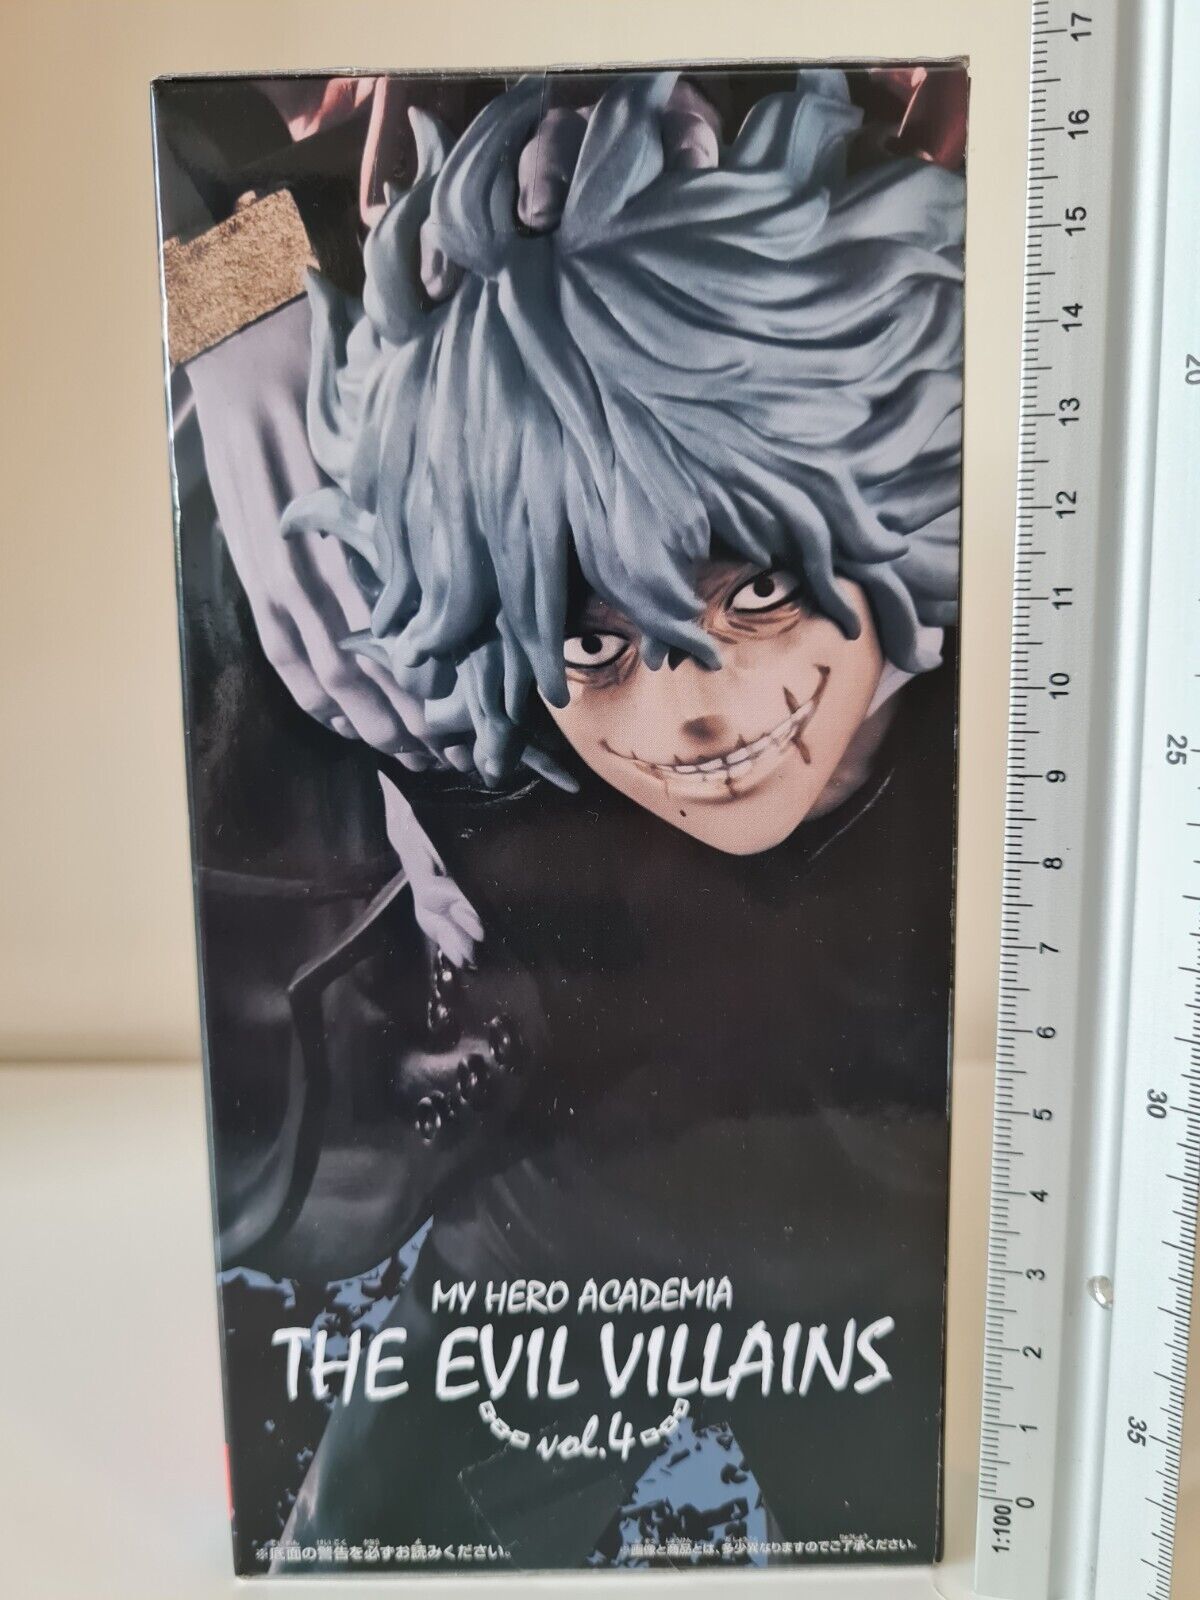 Tomura Shigaraki “My Hero Academia” The Evil Villains Vol. 2